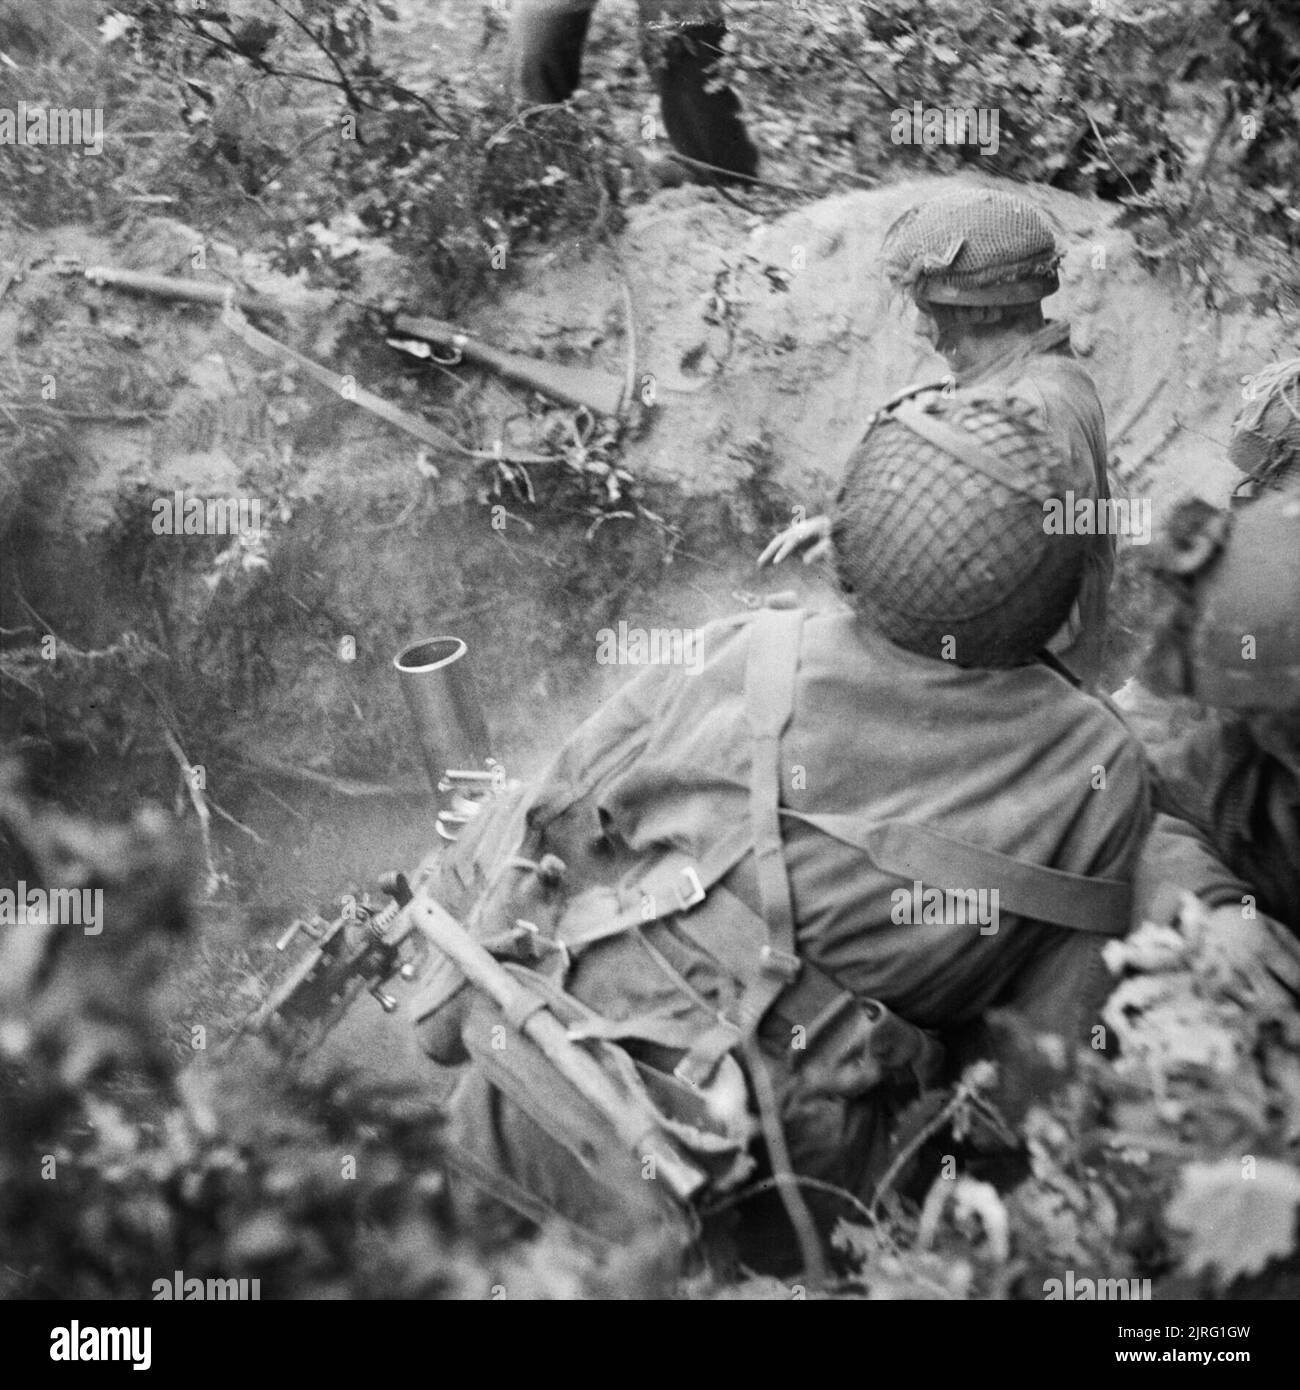 La campagne du nord ouest de l'Europe 1944-1945 3 mortier de 81 cm de l'équipe no23 Mortier (charrettes) Section de Support Compagnie, 1er Border Regiment, 1re Division, en action dans le périmètre d'Arnhem Oosterbeek, 21 septembre 1944. Banque D'Images